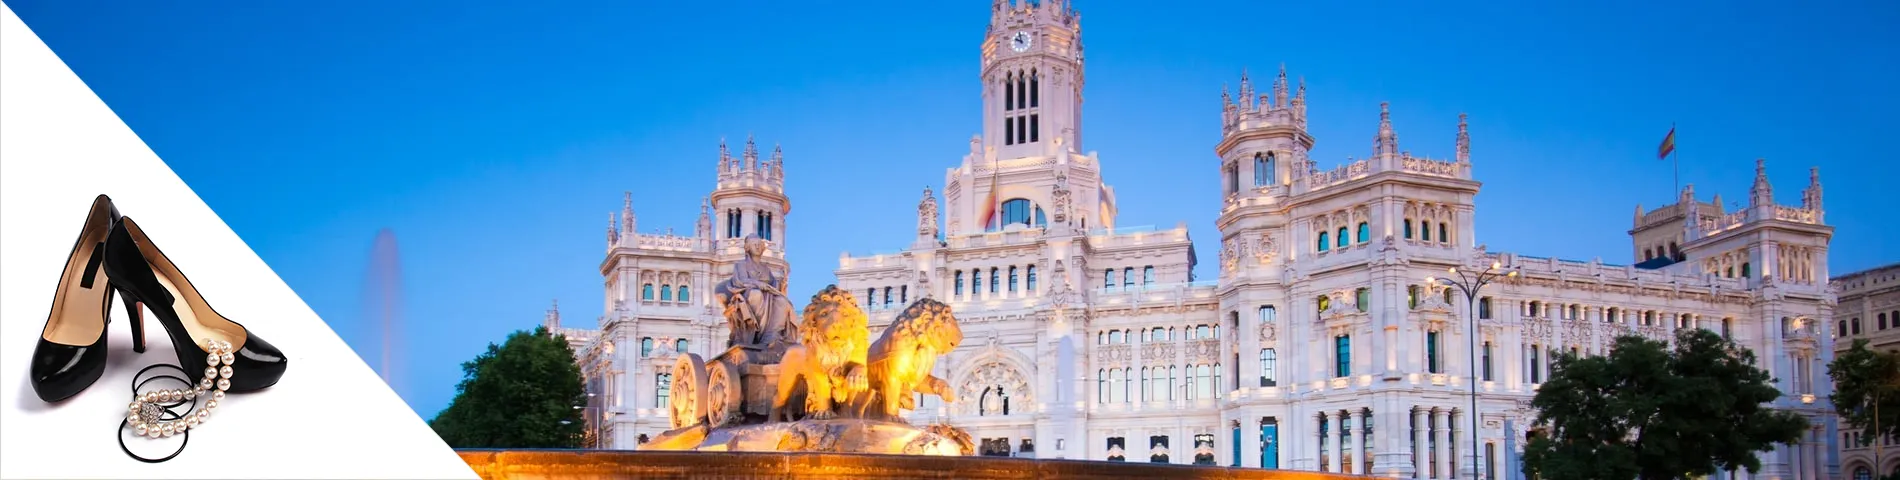 Madrid - Spaans  voor mode